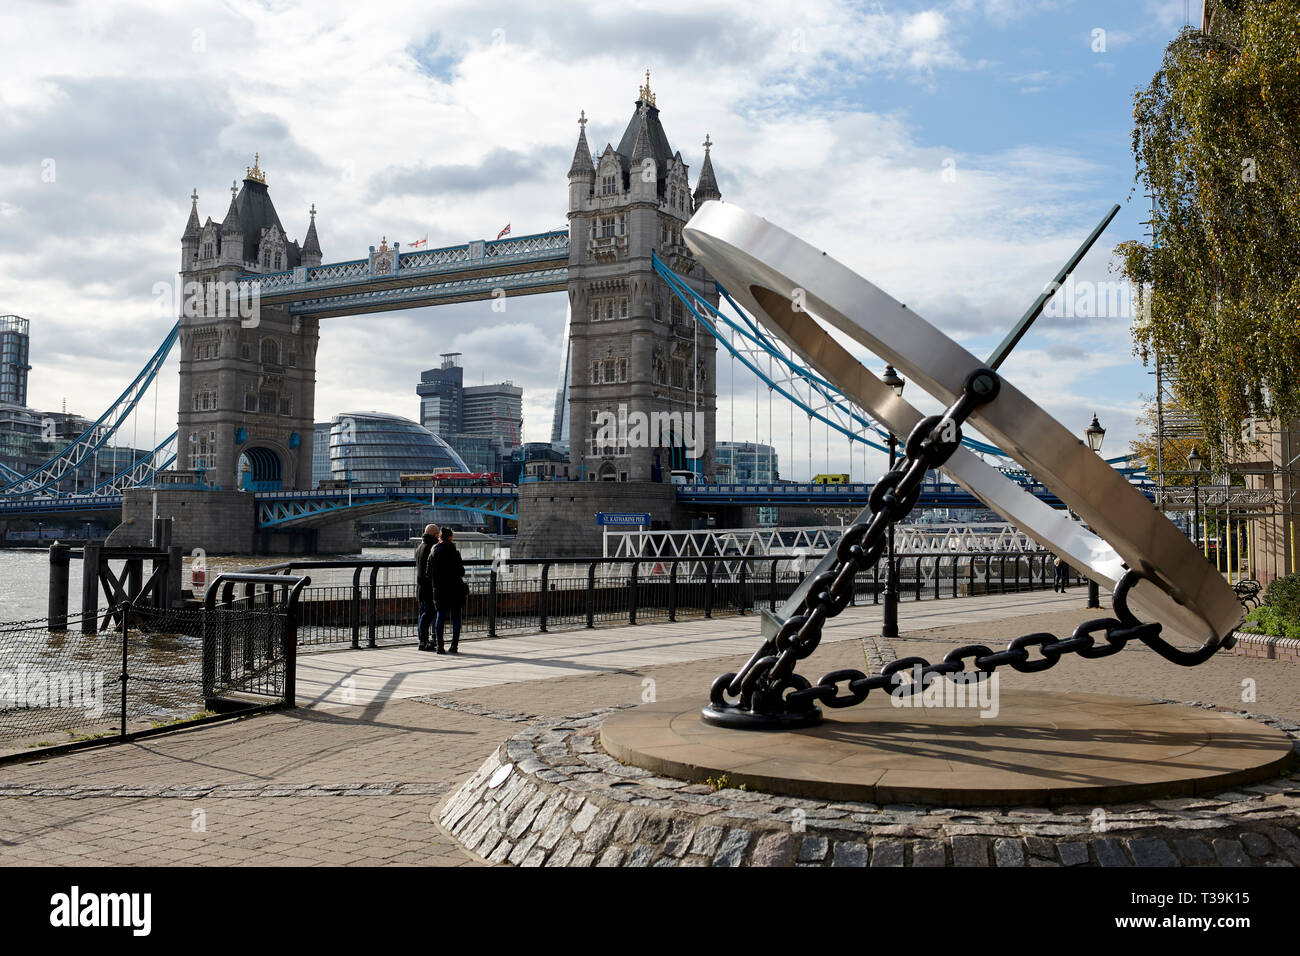 Tower Bridge de Londres avec l'horloge cadran solaire au premier plan sur la rive nord de la rivière Thames, Angleterre, Royaume-Uni. Banque D'Images